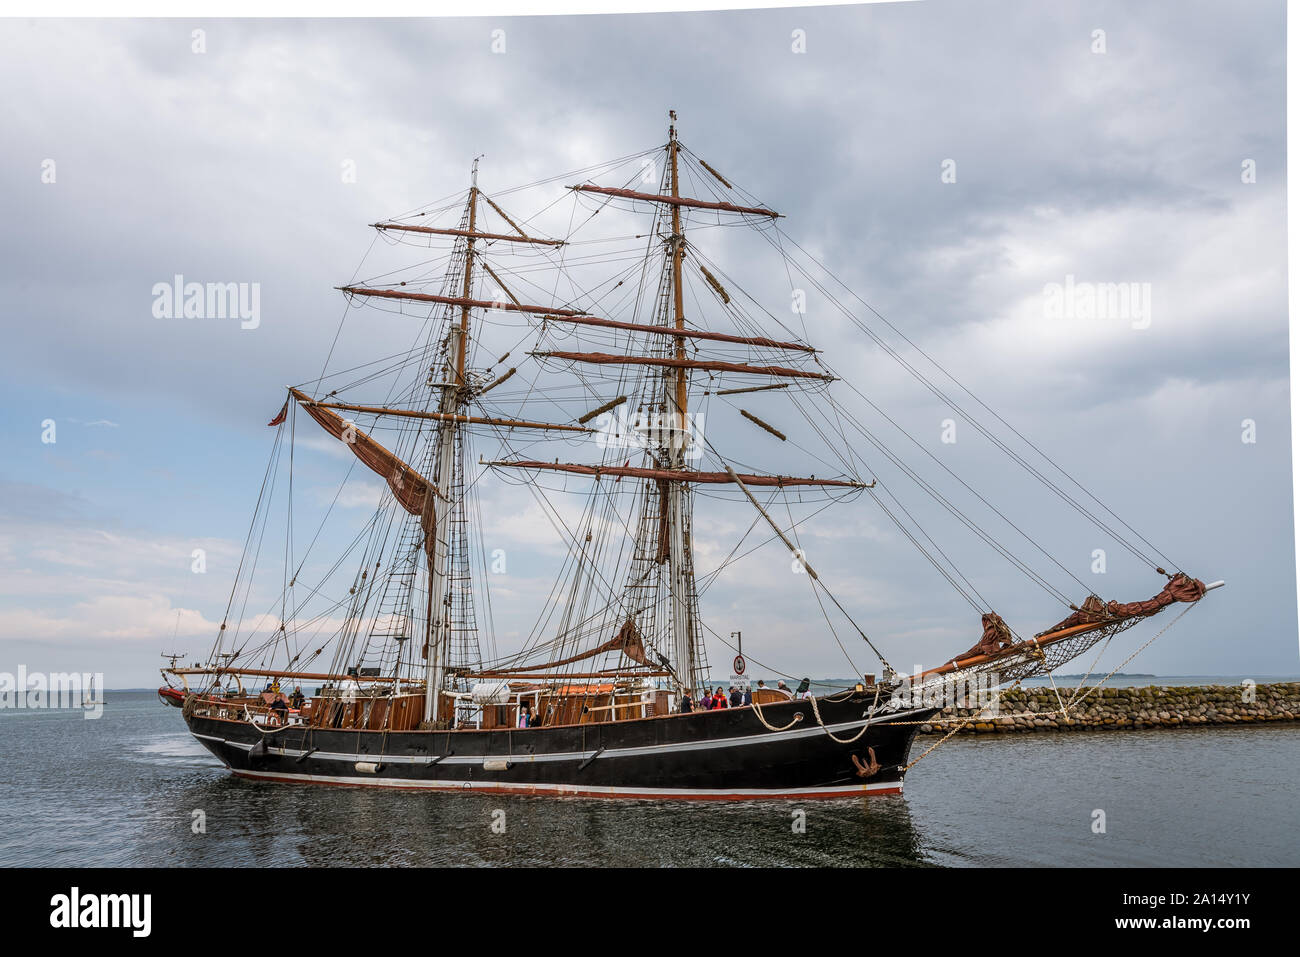 Die englische Ausbildung Schiff das Auge der Wind in den Hafen von Ærøskøbing, Dänemark, 13. Juli 2019 Stockfoto